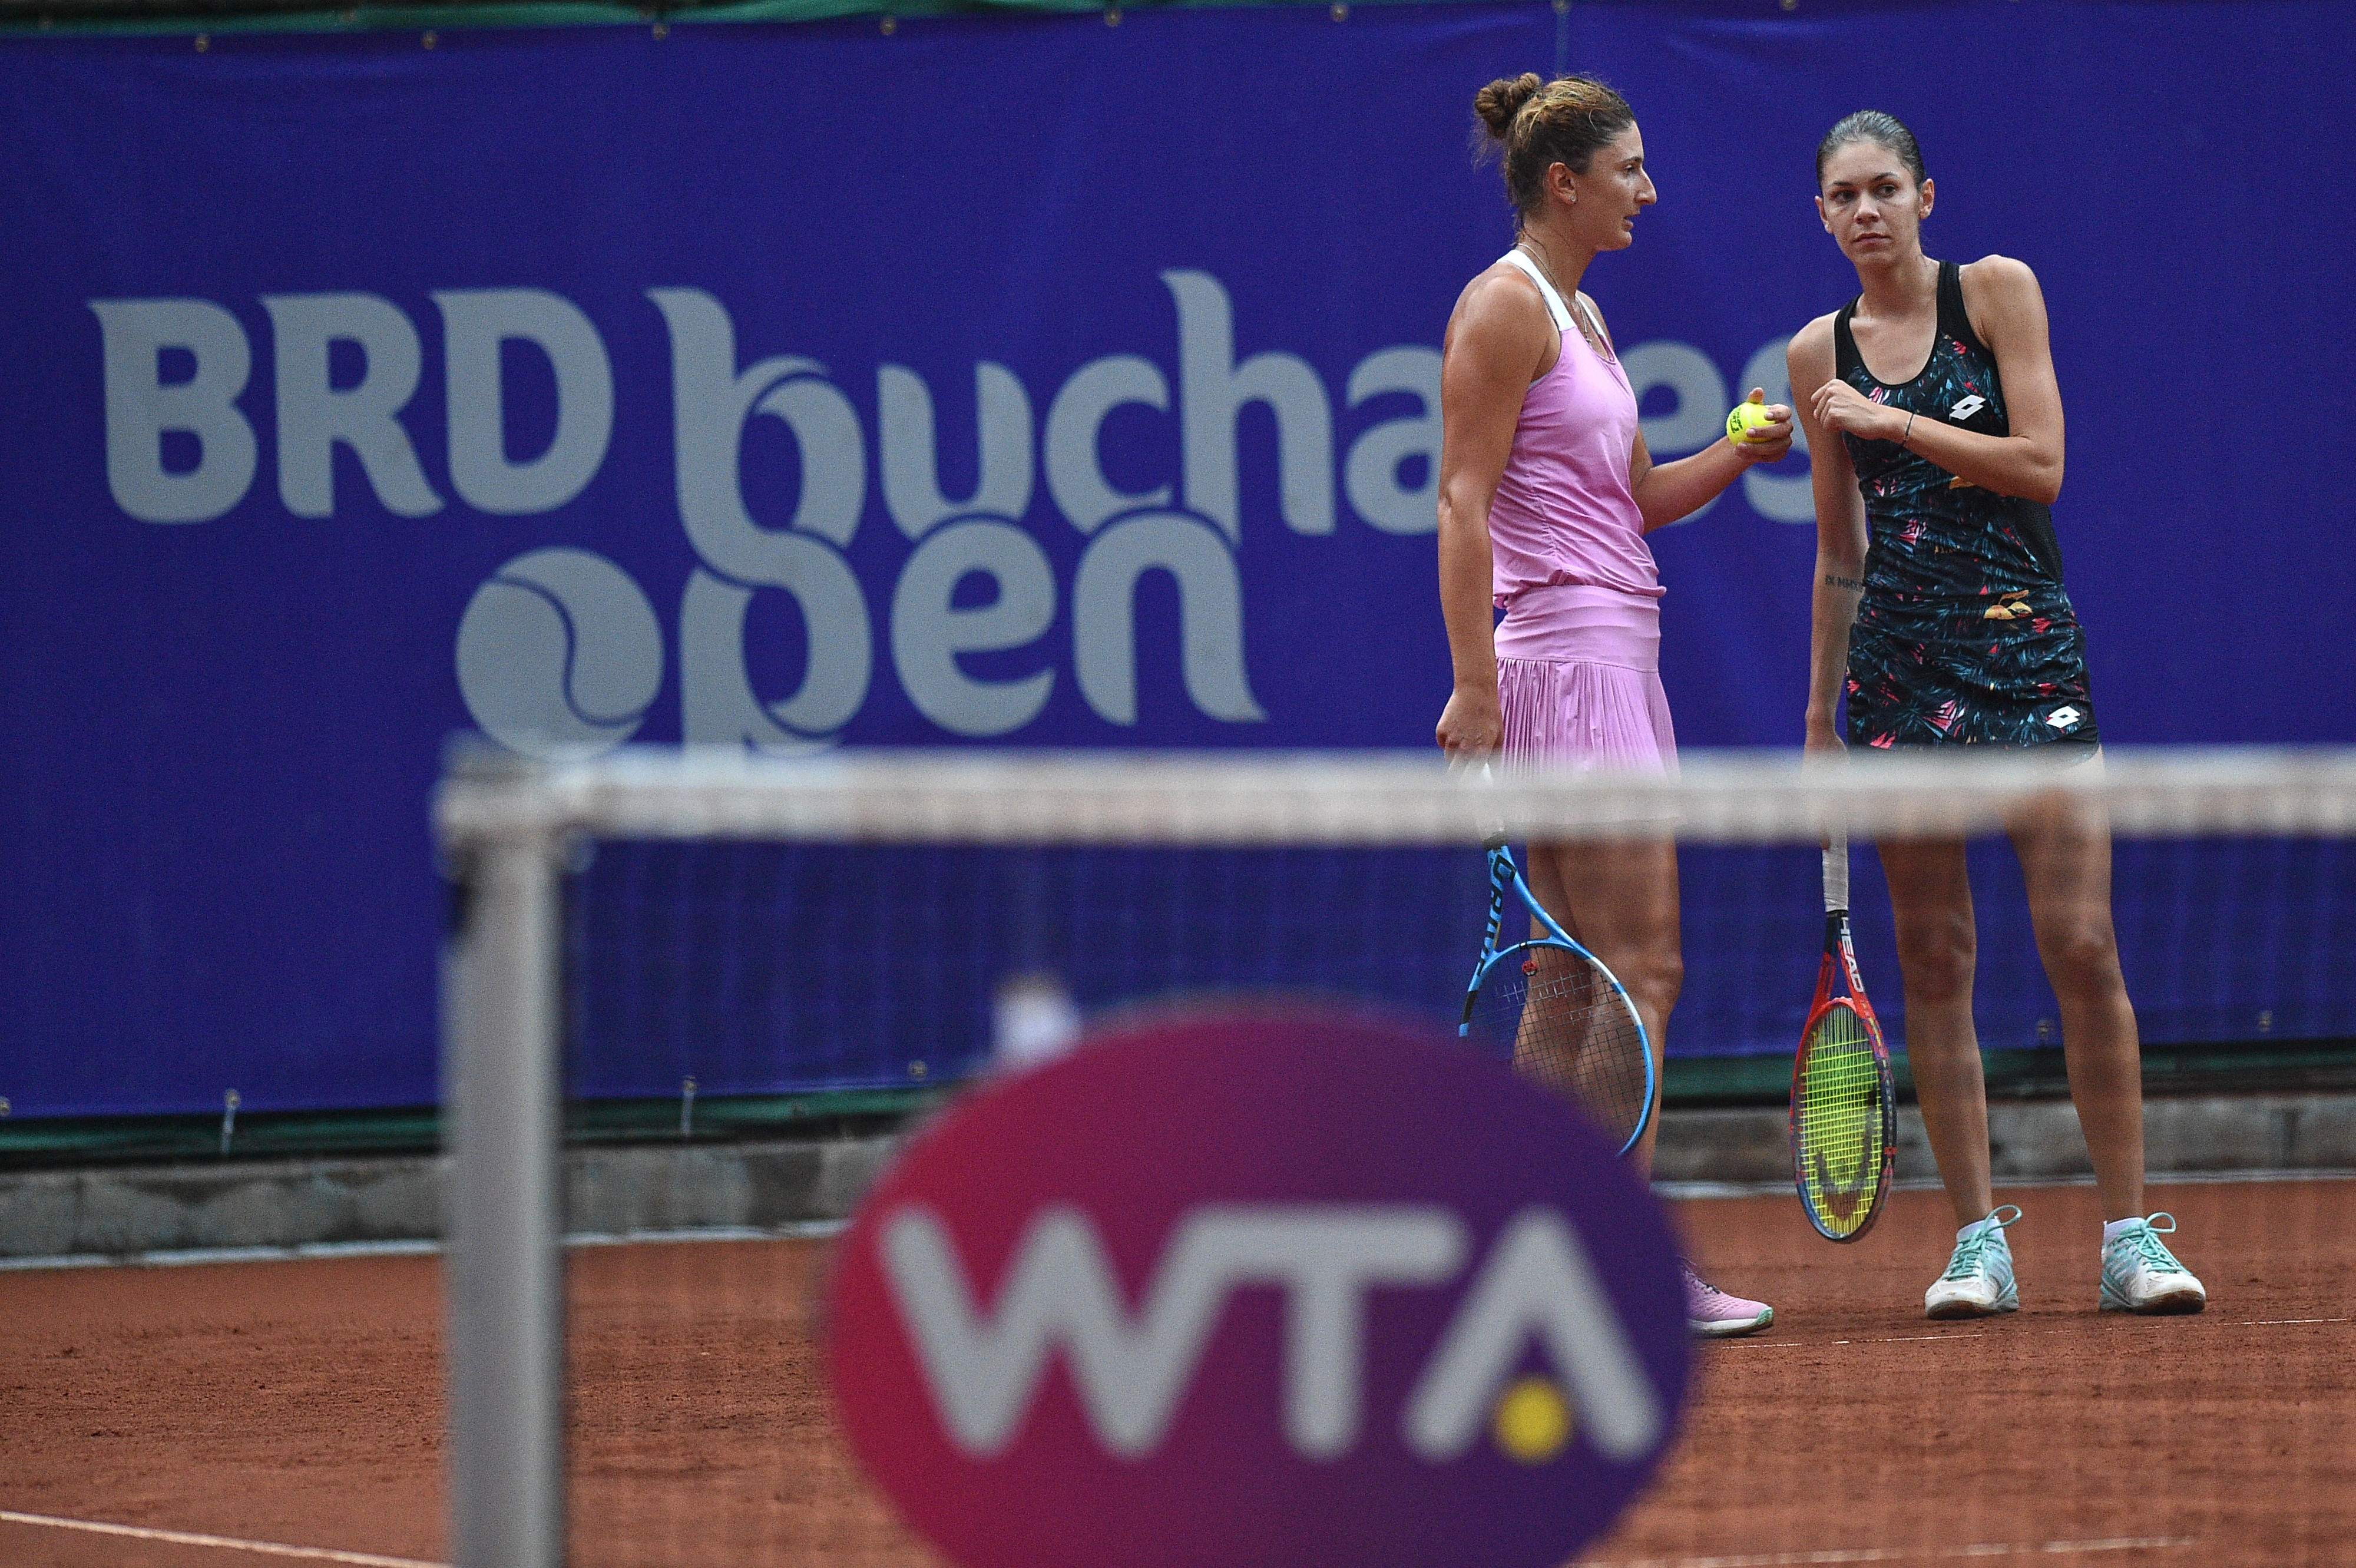 Irina Begu și Andreea Mitu s-au calificat în finala probei de dublu la BRD Bucharest Open